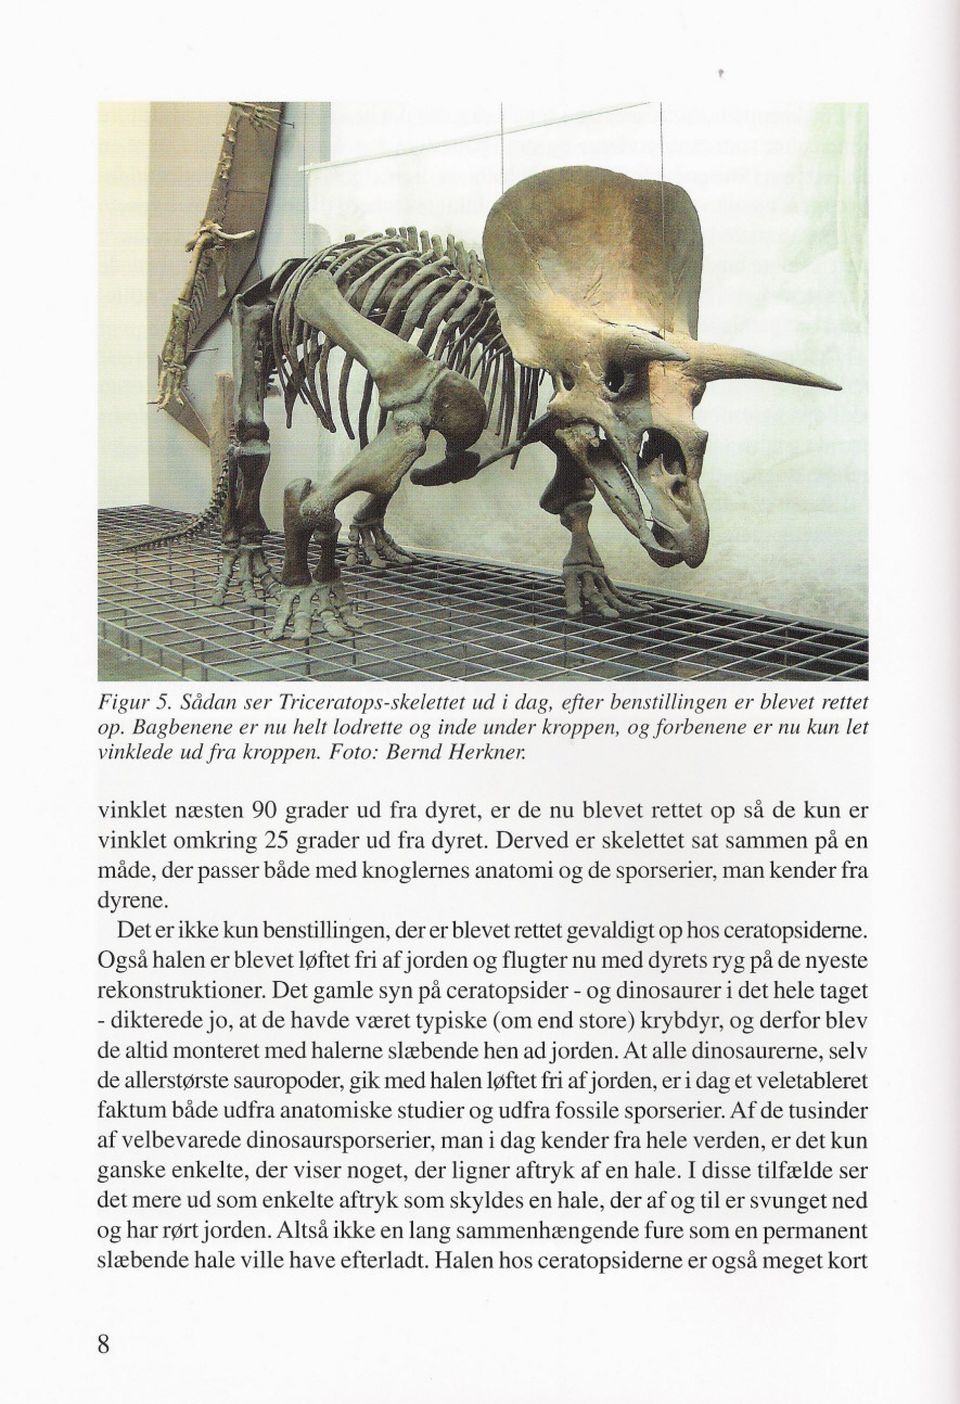 Derved er skelettet sat sammen på en måde, der passer både med knoglernes anatomi og de sporserier, man kender fra dyrene.